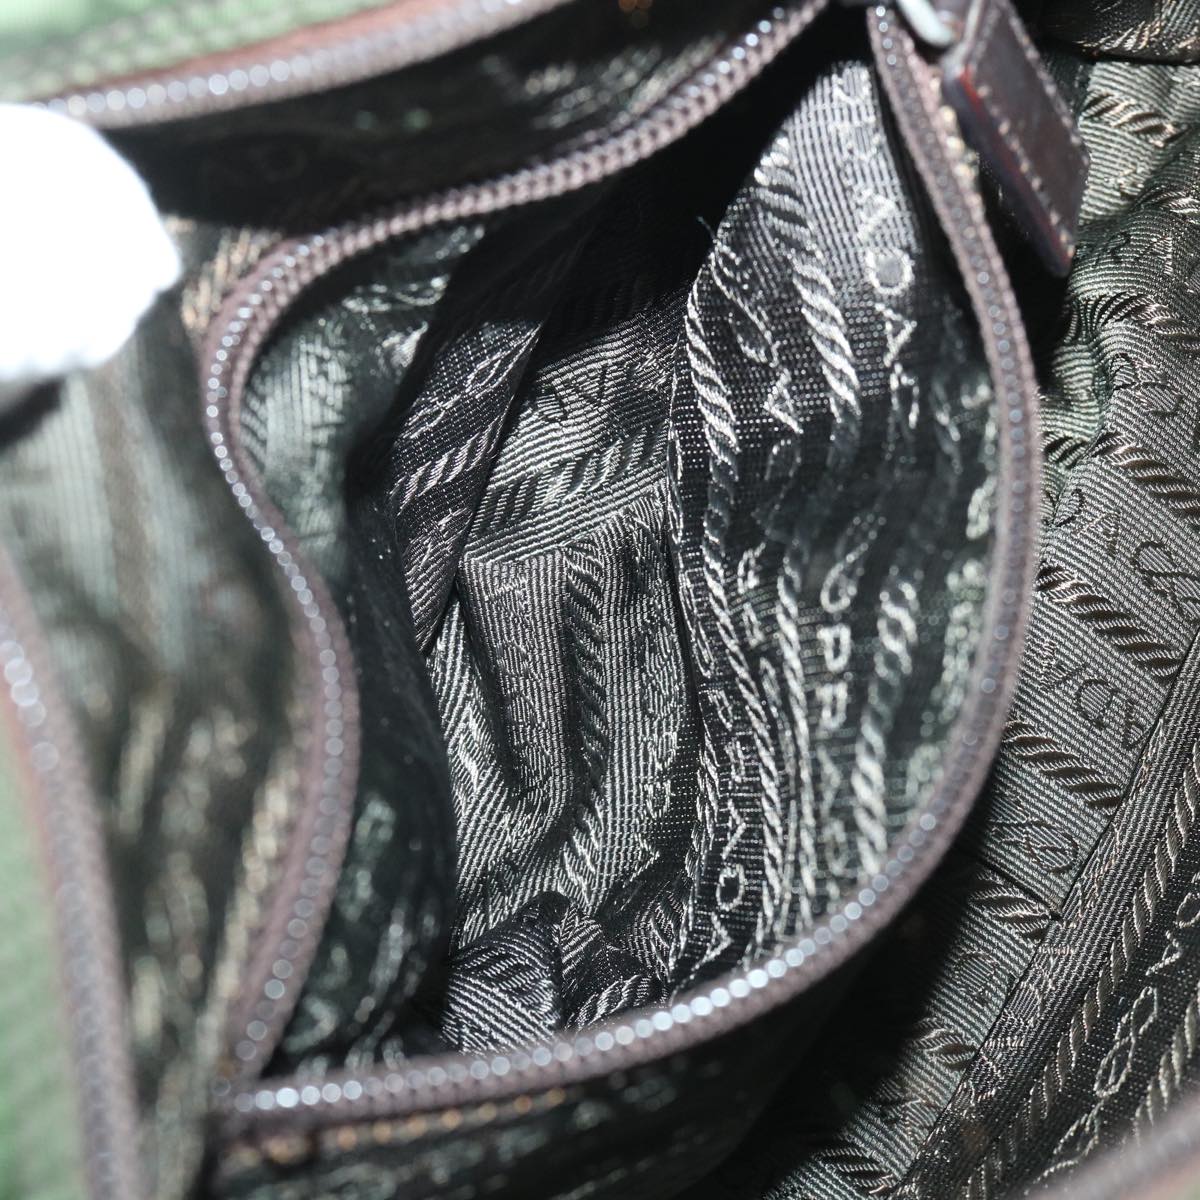 PRADA Shoulder Bag Nylon Khaki Auth ar10135B